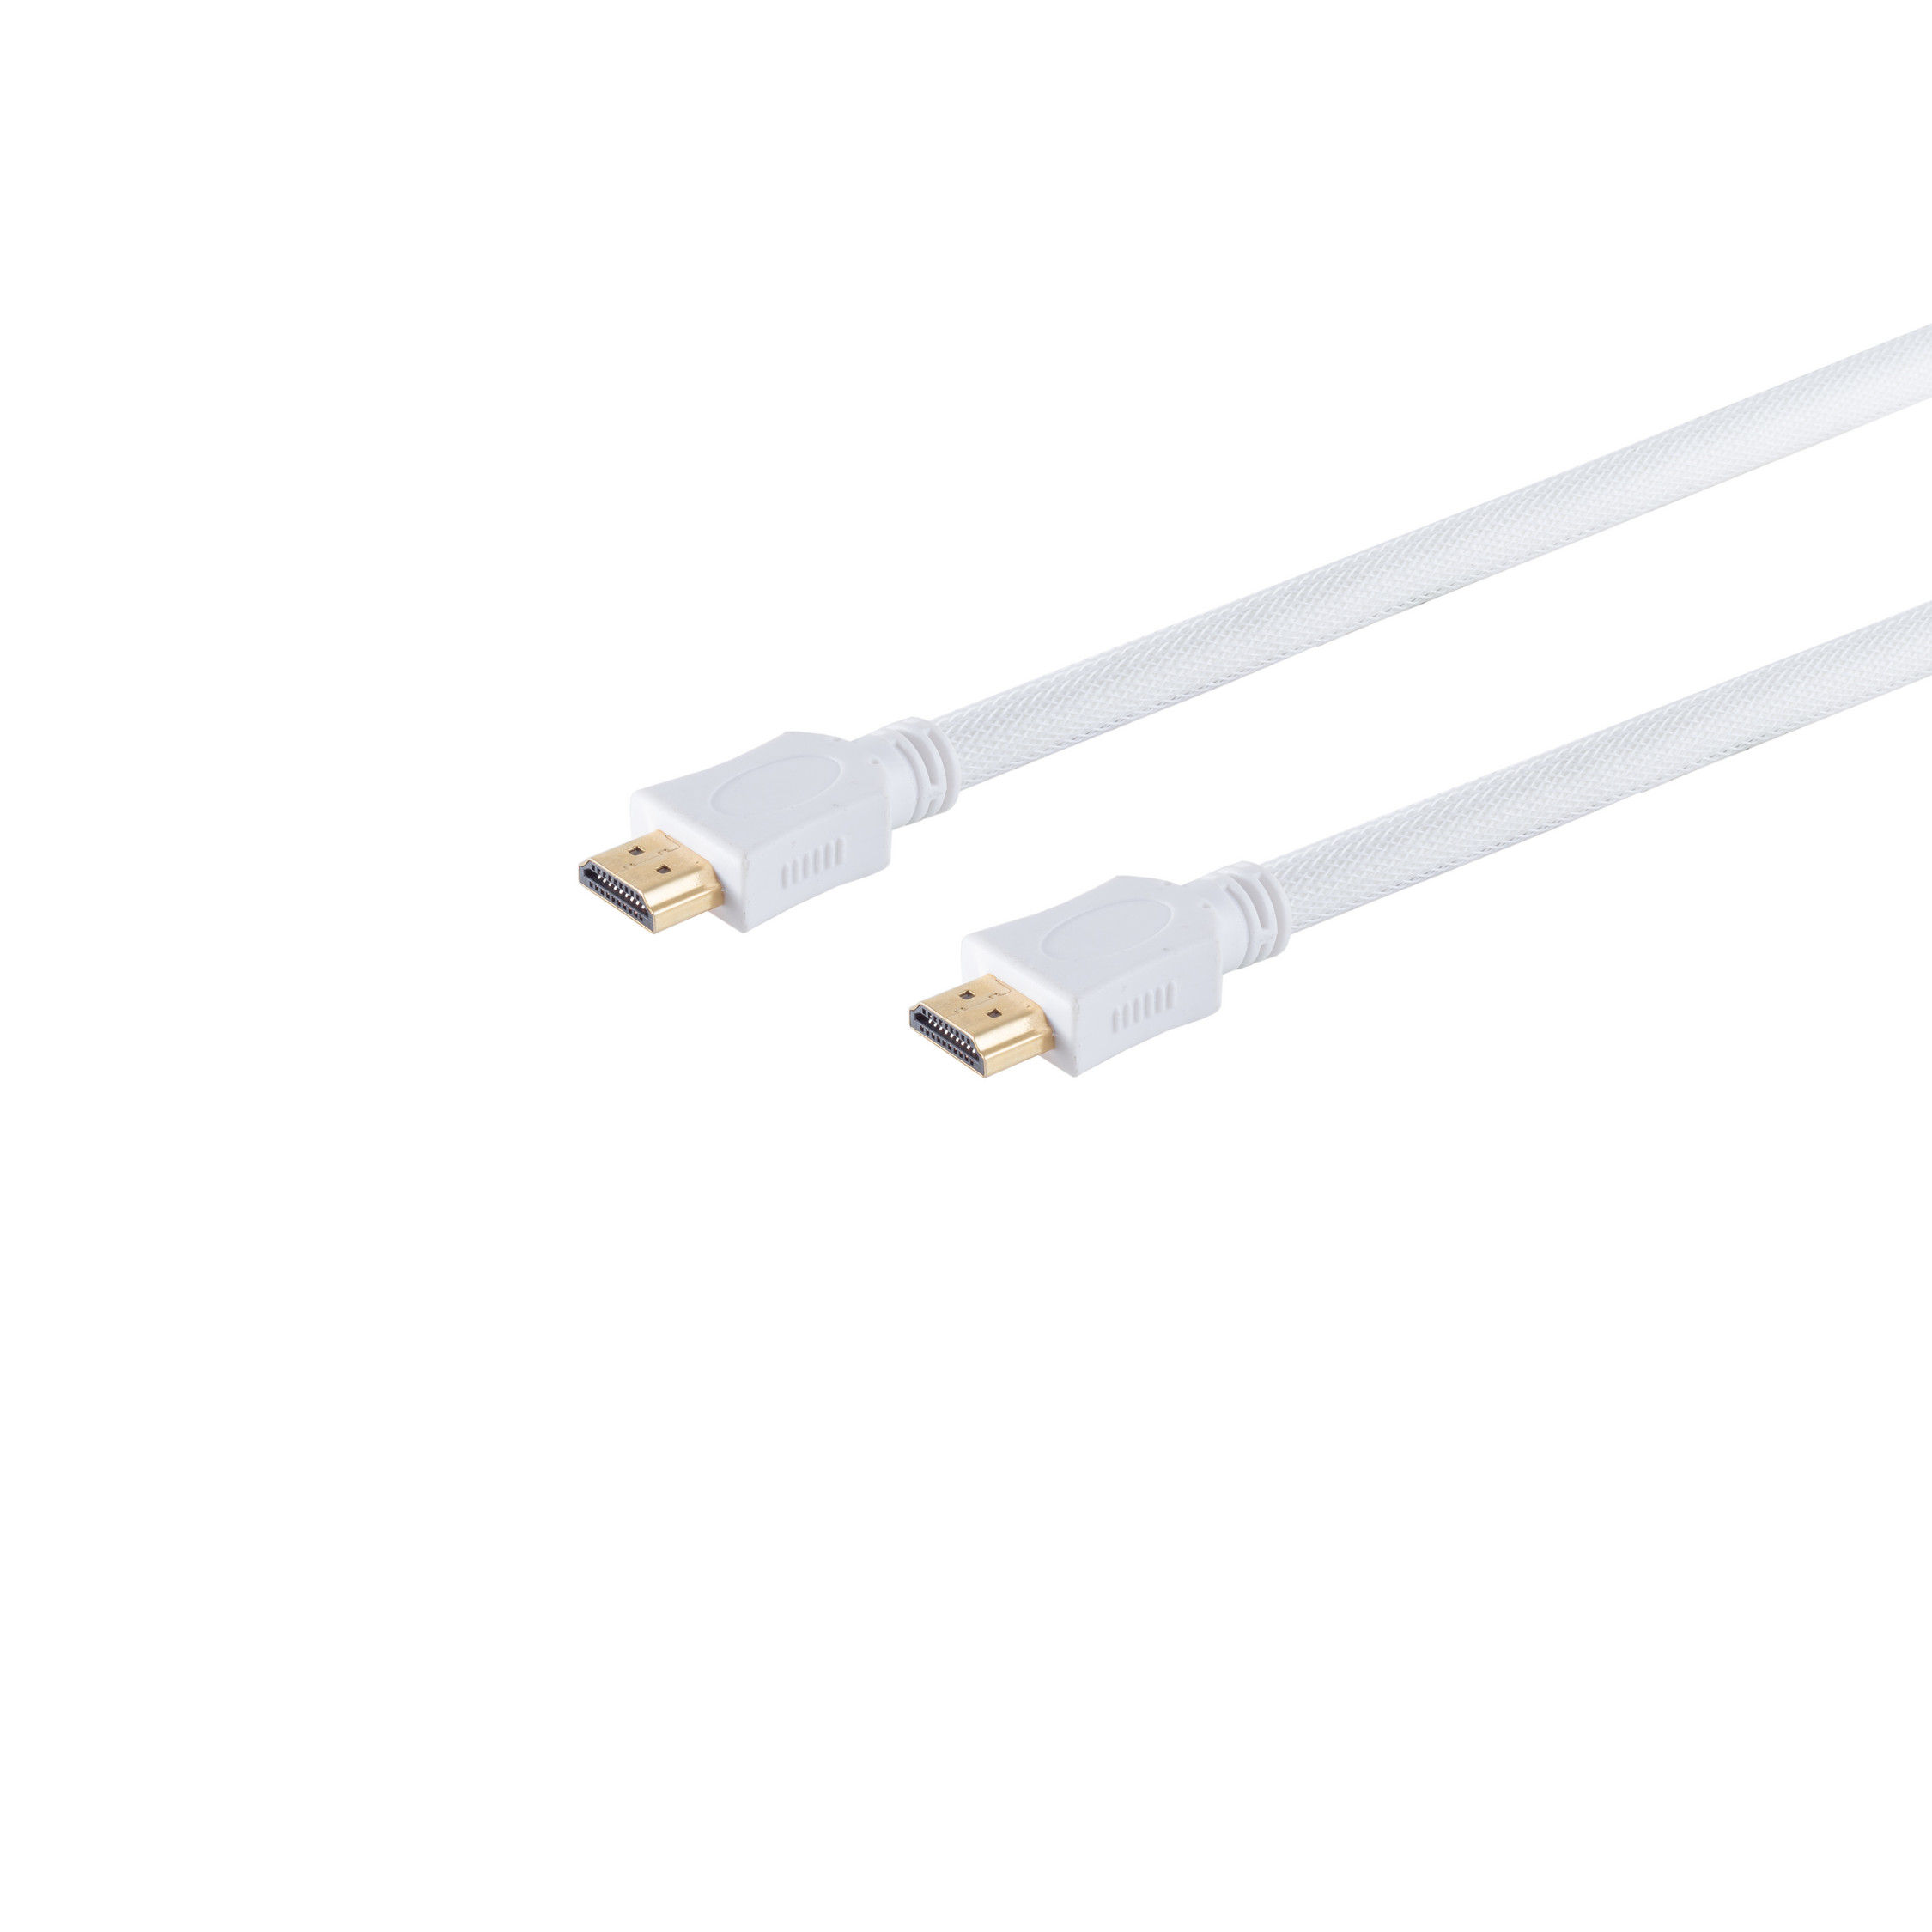 / MAXIMUM HDMI HEAC S/CONN Kabel A-St. HDMI weiß A-St. CONNECTIVITY 7,5m Nylon verg. HDMI